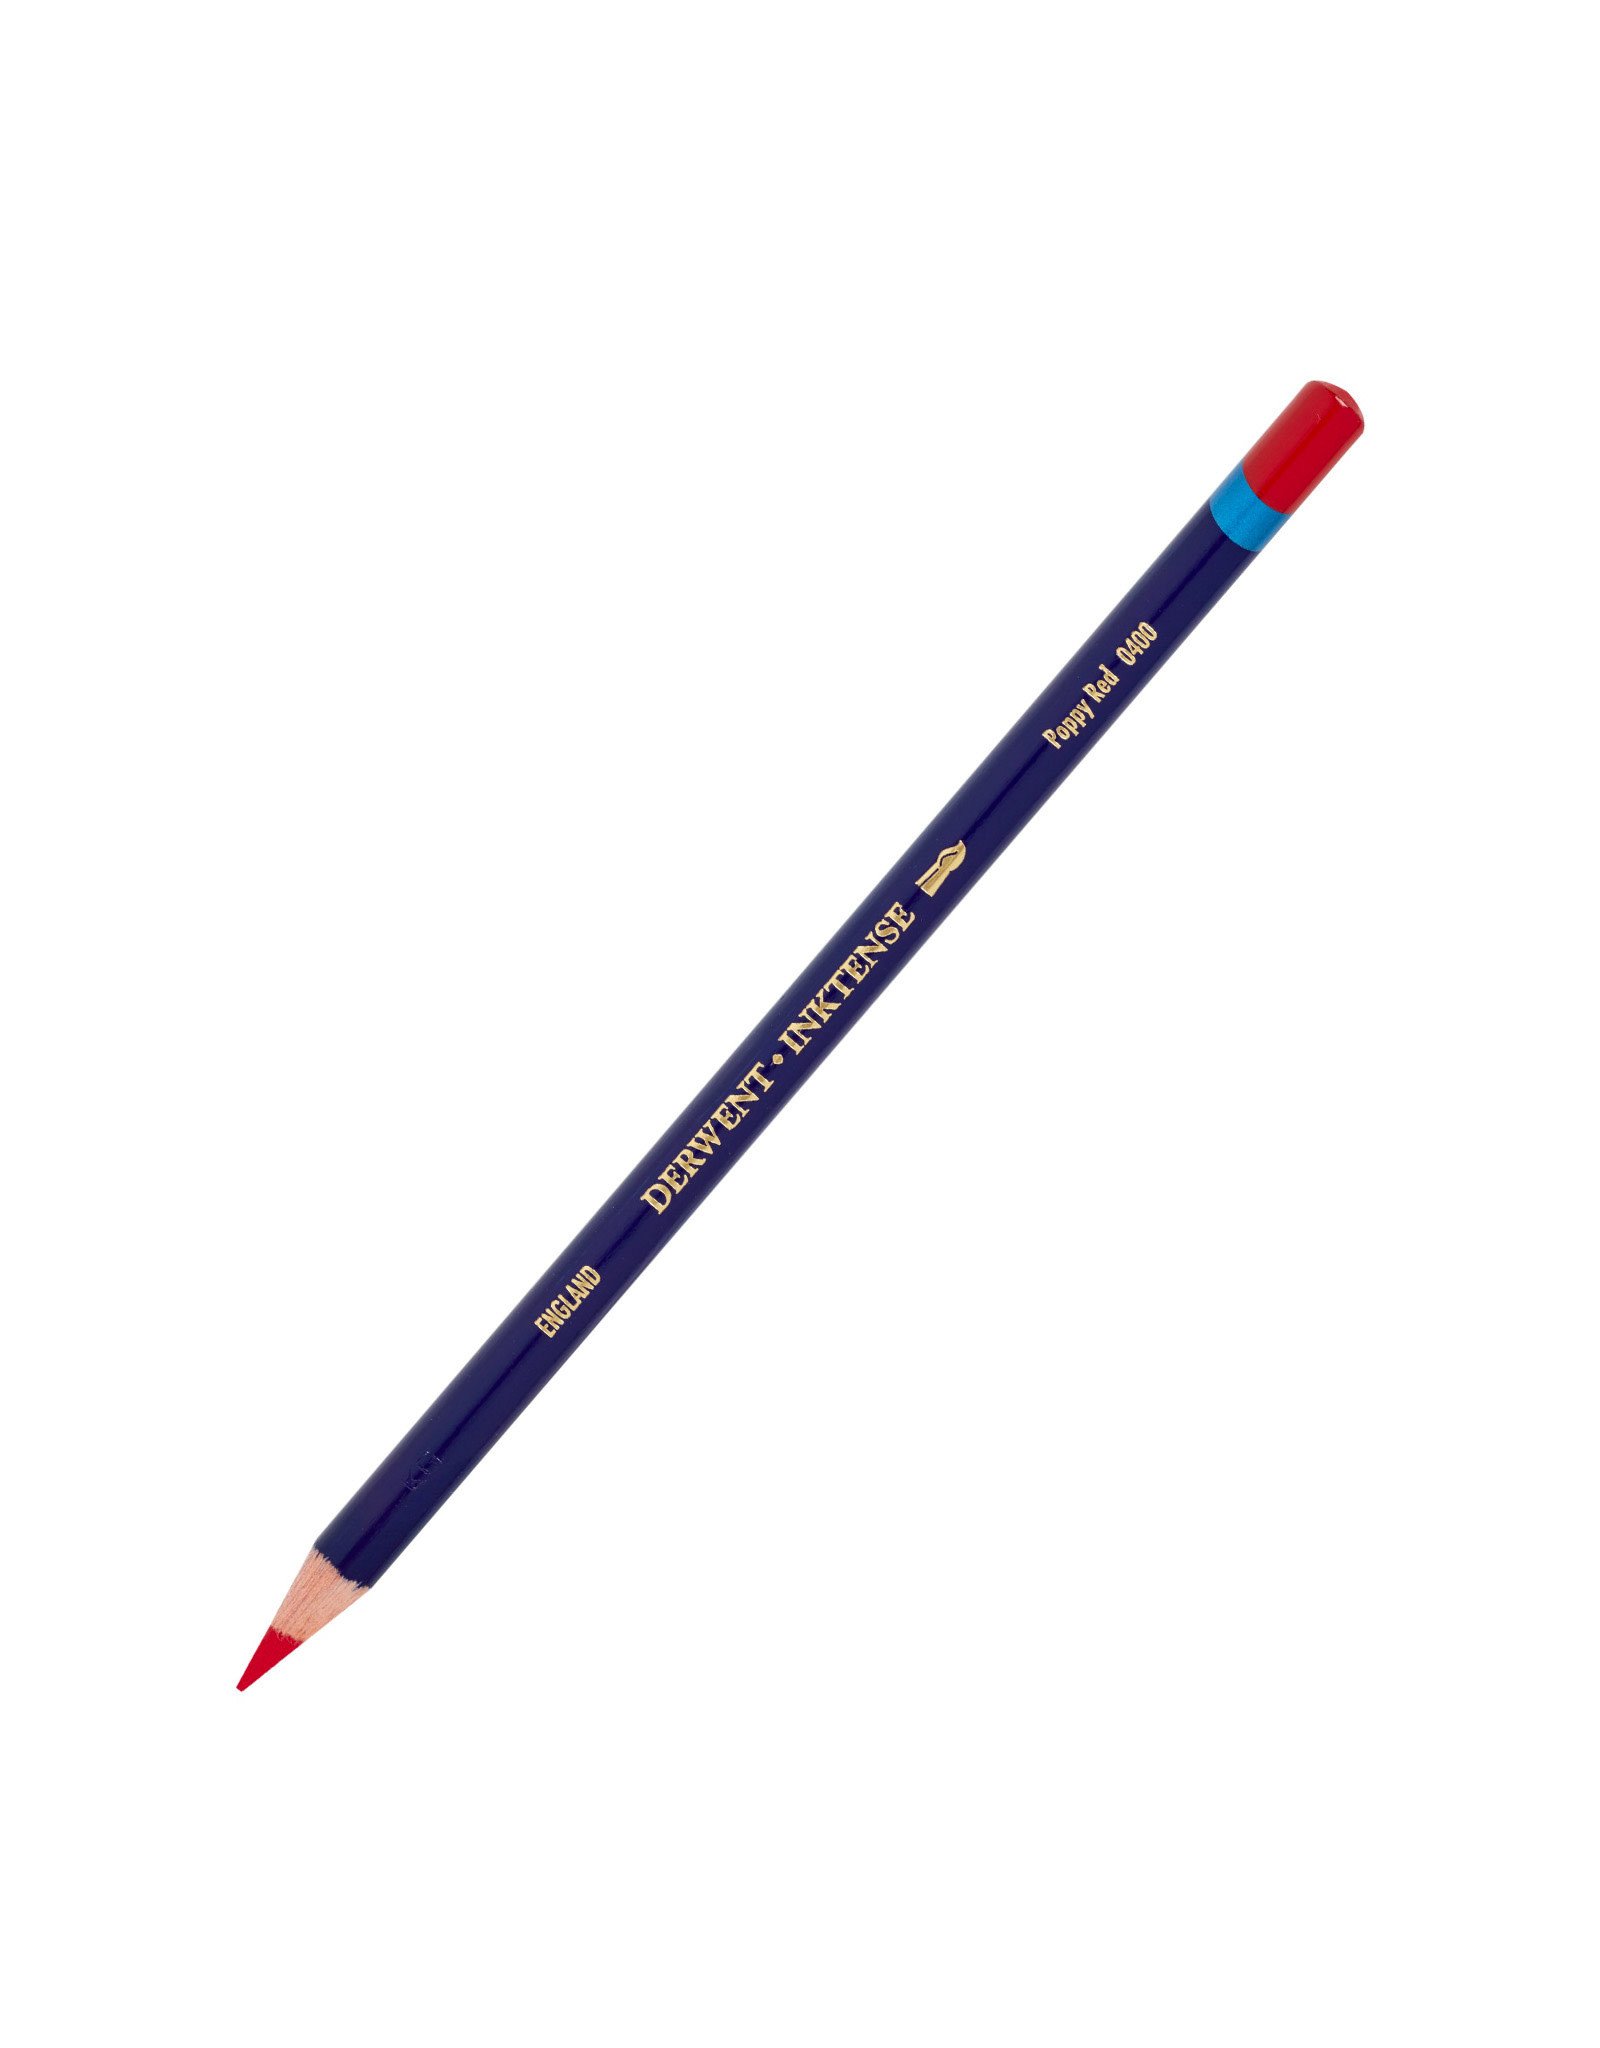 Derwent Derwent Inktense Pencil, Poppy Red